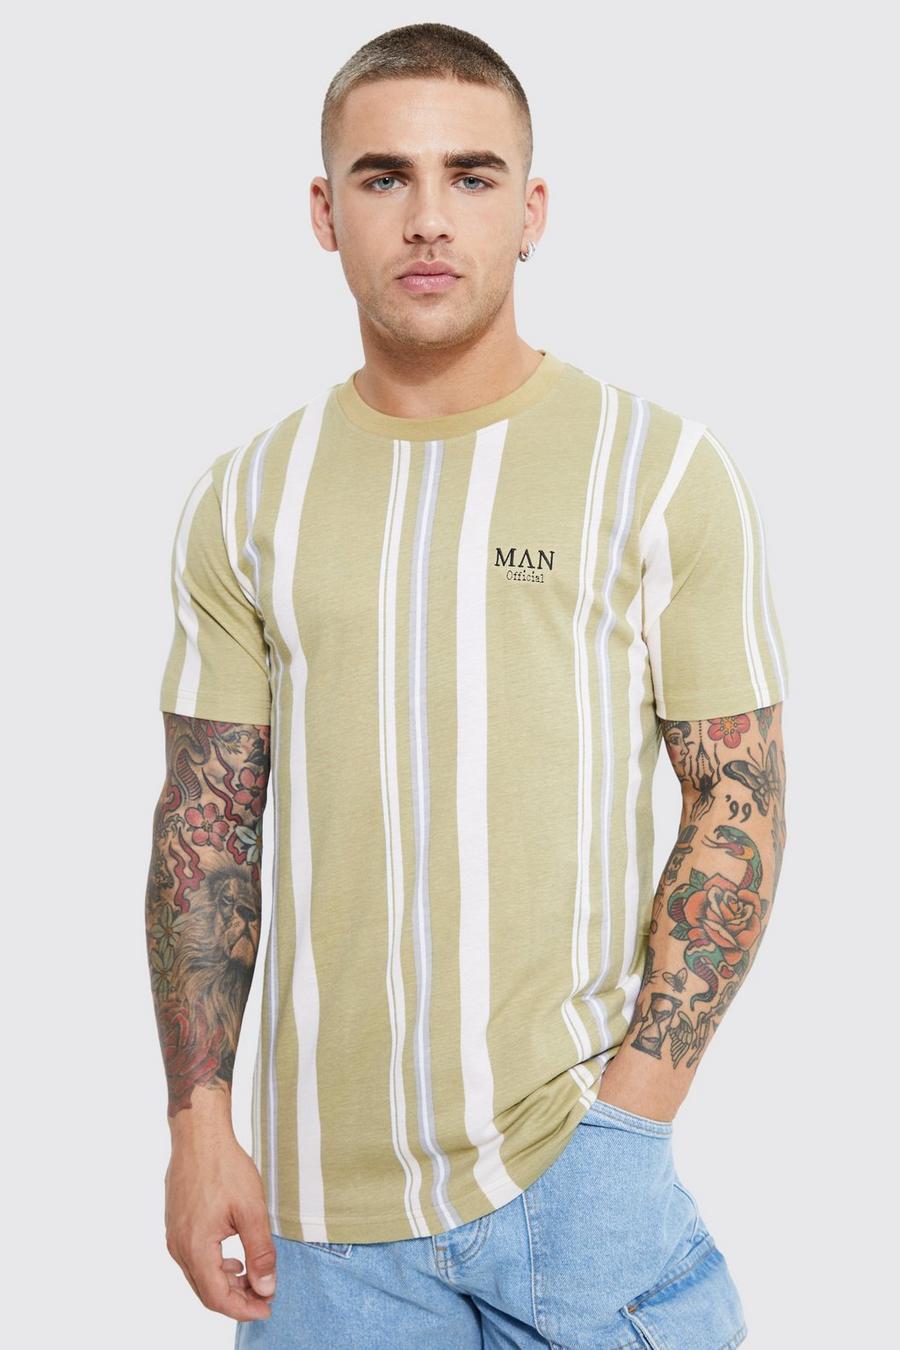 Olive grün Slim Fit Man Roman Printed Stripe T-shirt